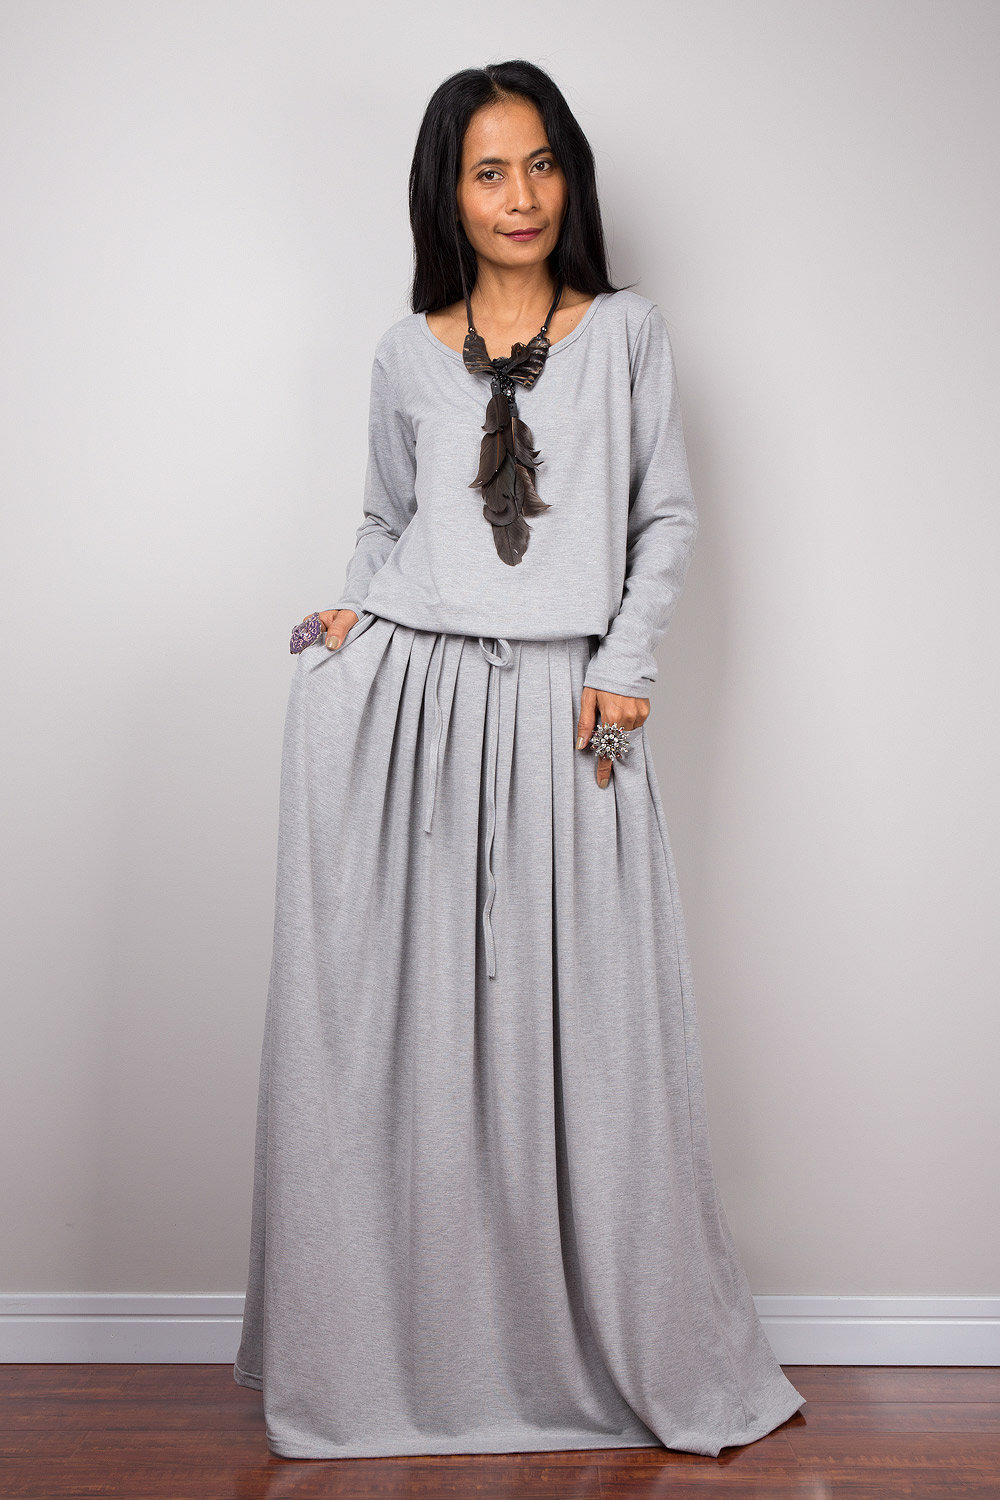 Women's long sleeve grey maxi Dress with pockets handmade | Etsy